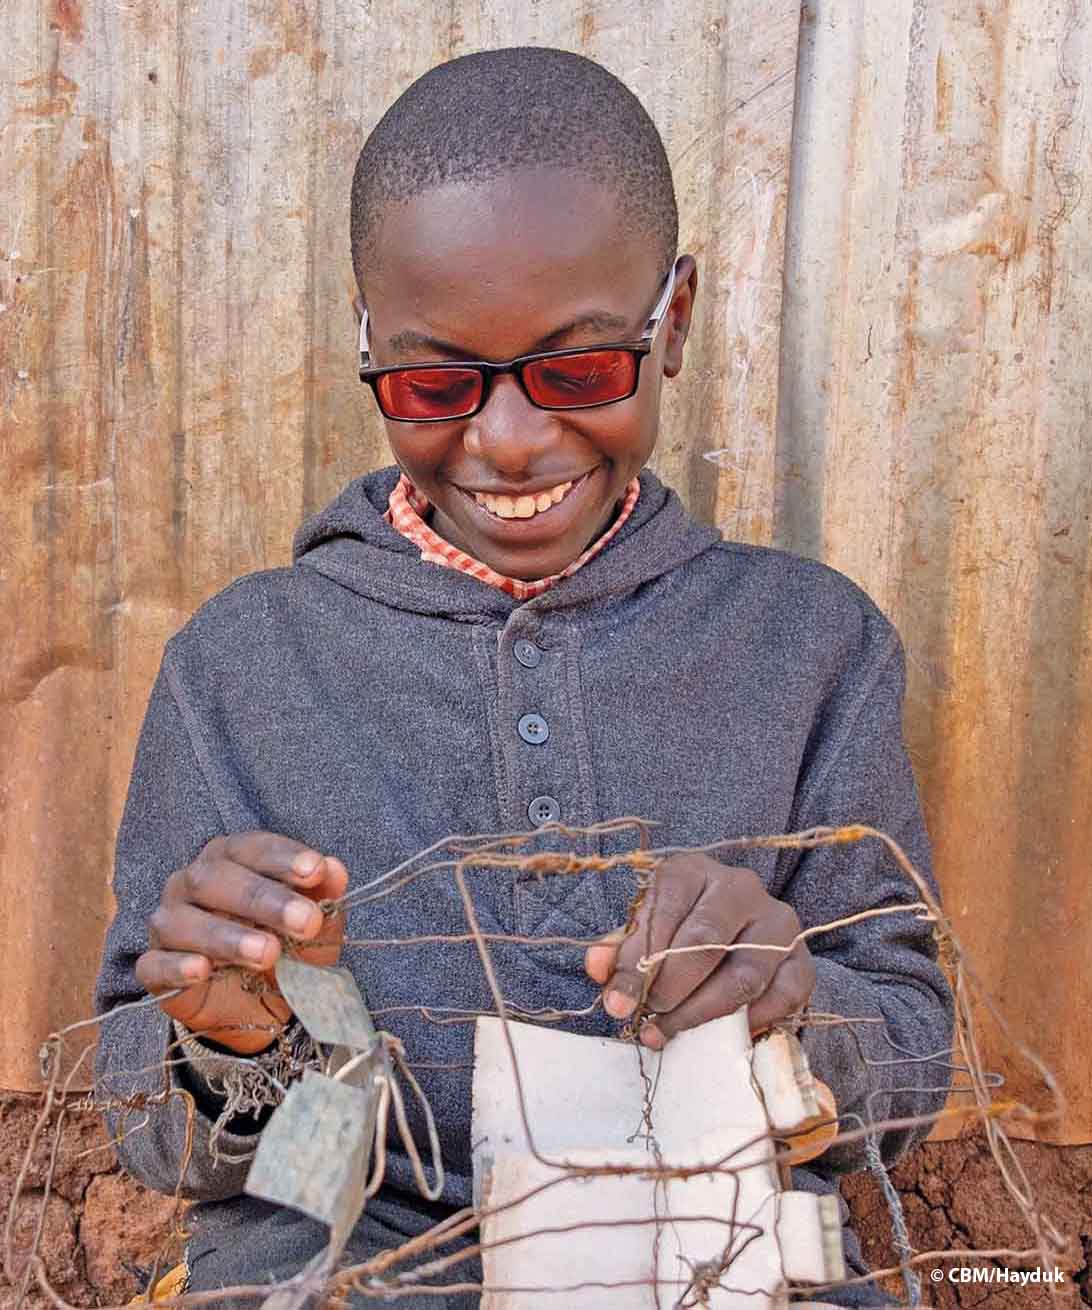 Un ragazzo keniano con occhiali con filtro anti UV costruisce, tenendola in grembo, un’auto con il filo di ferro. Le ruote posteriori sono due tappi bianchi di bottiglie PET. 